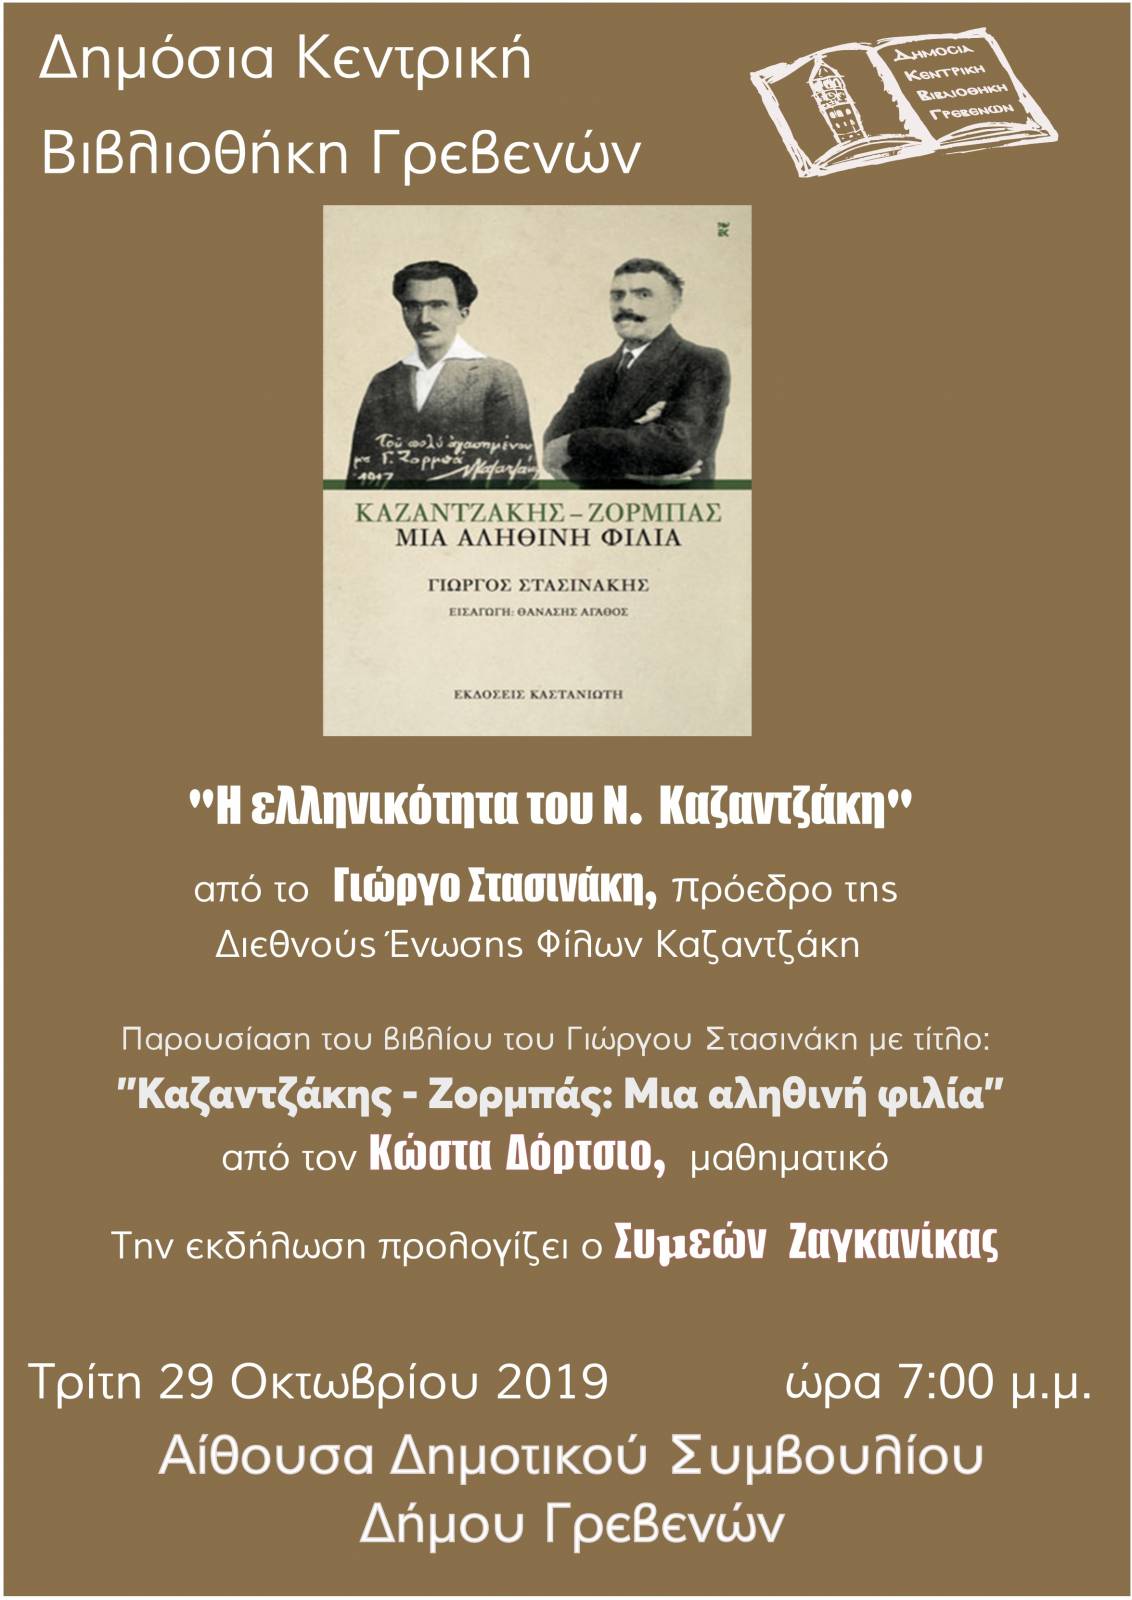 Παρουσίαση βιβλίου:”Η ελληνικότητα του Ν. Καζαντζάκη” σήμερα Τρίτη 29 Οκτωβρίου